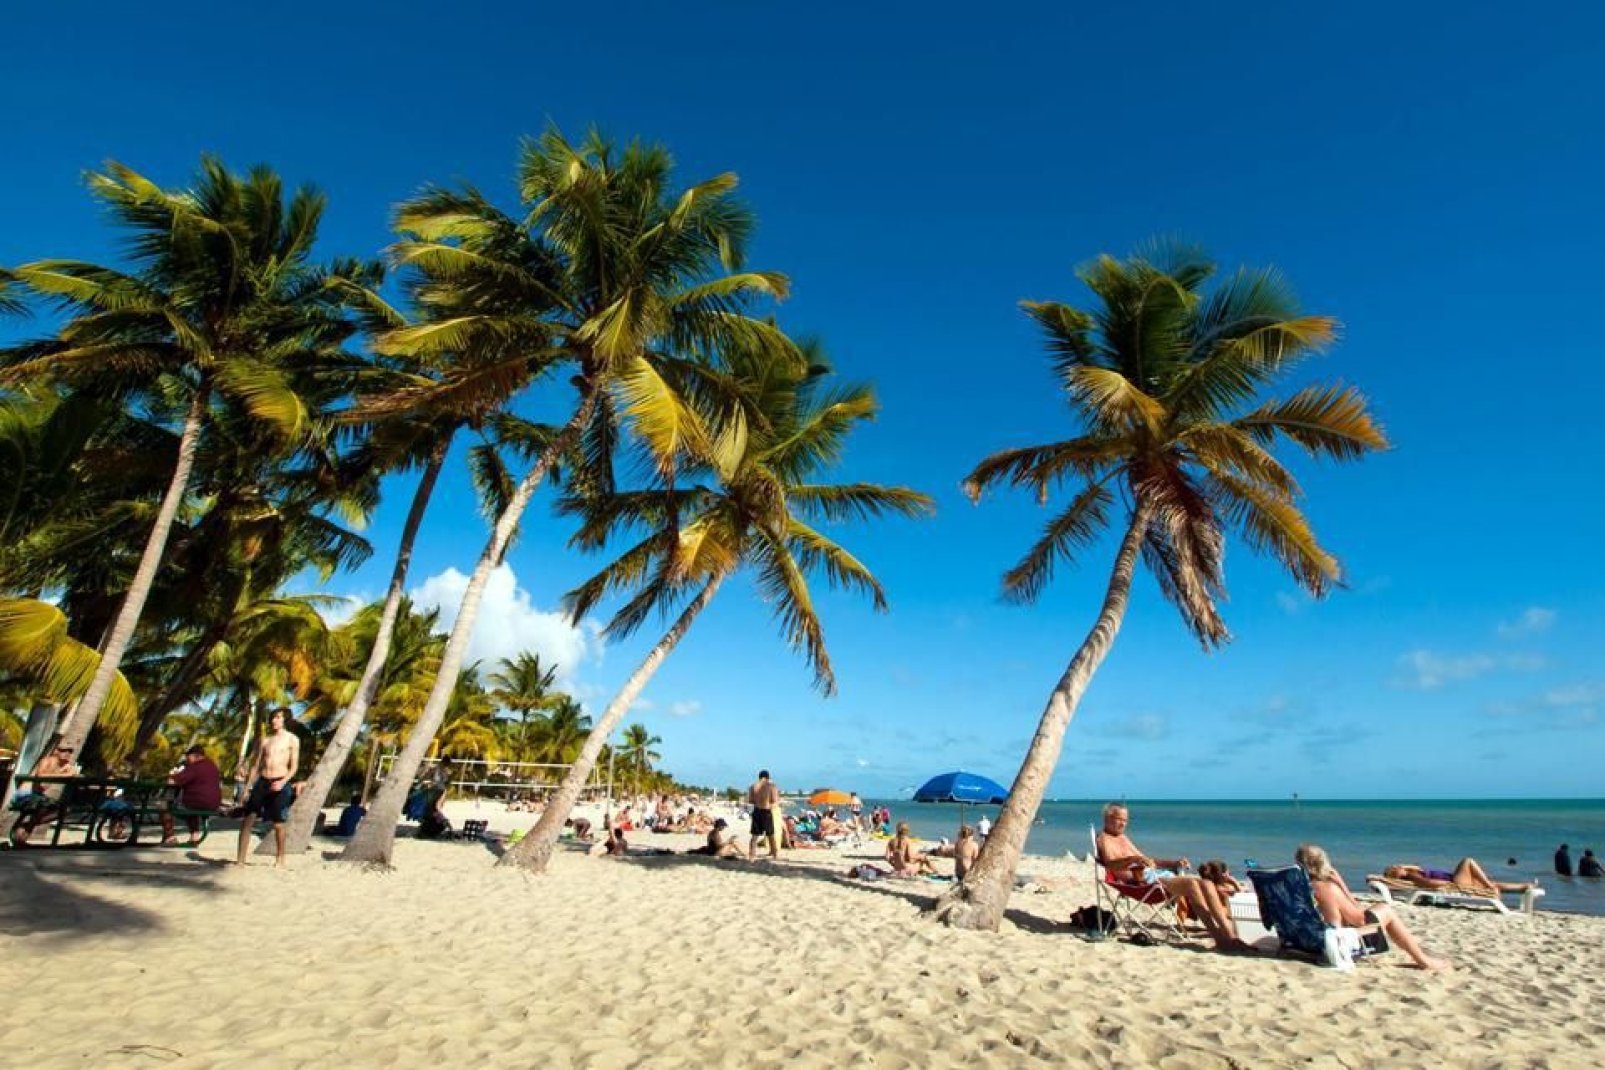 Key West è il nome della città e dell'isola situate nel punto continentale più a sud degli Stati Uniti, facile da raggiungere in barca.